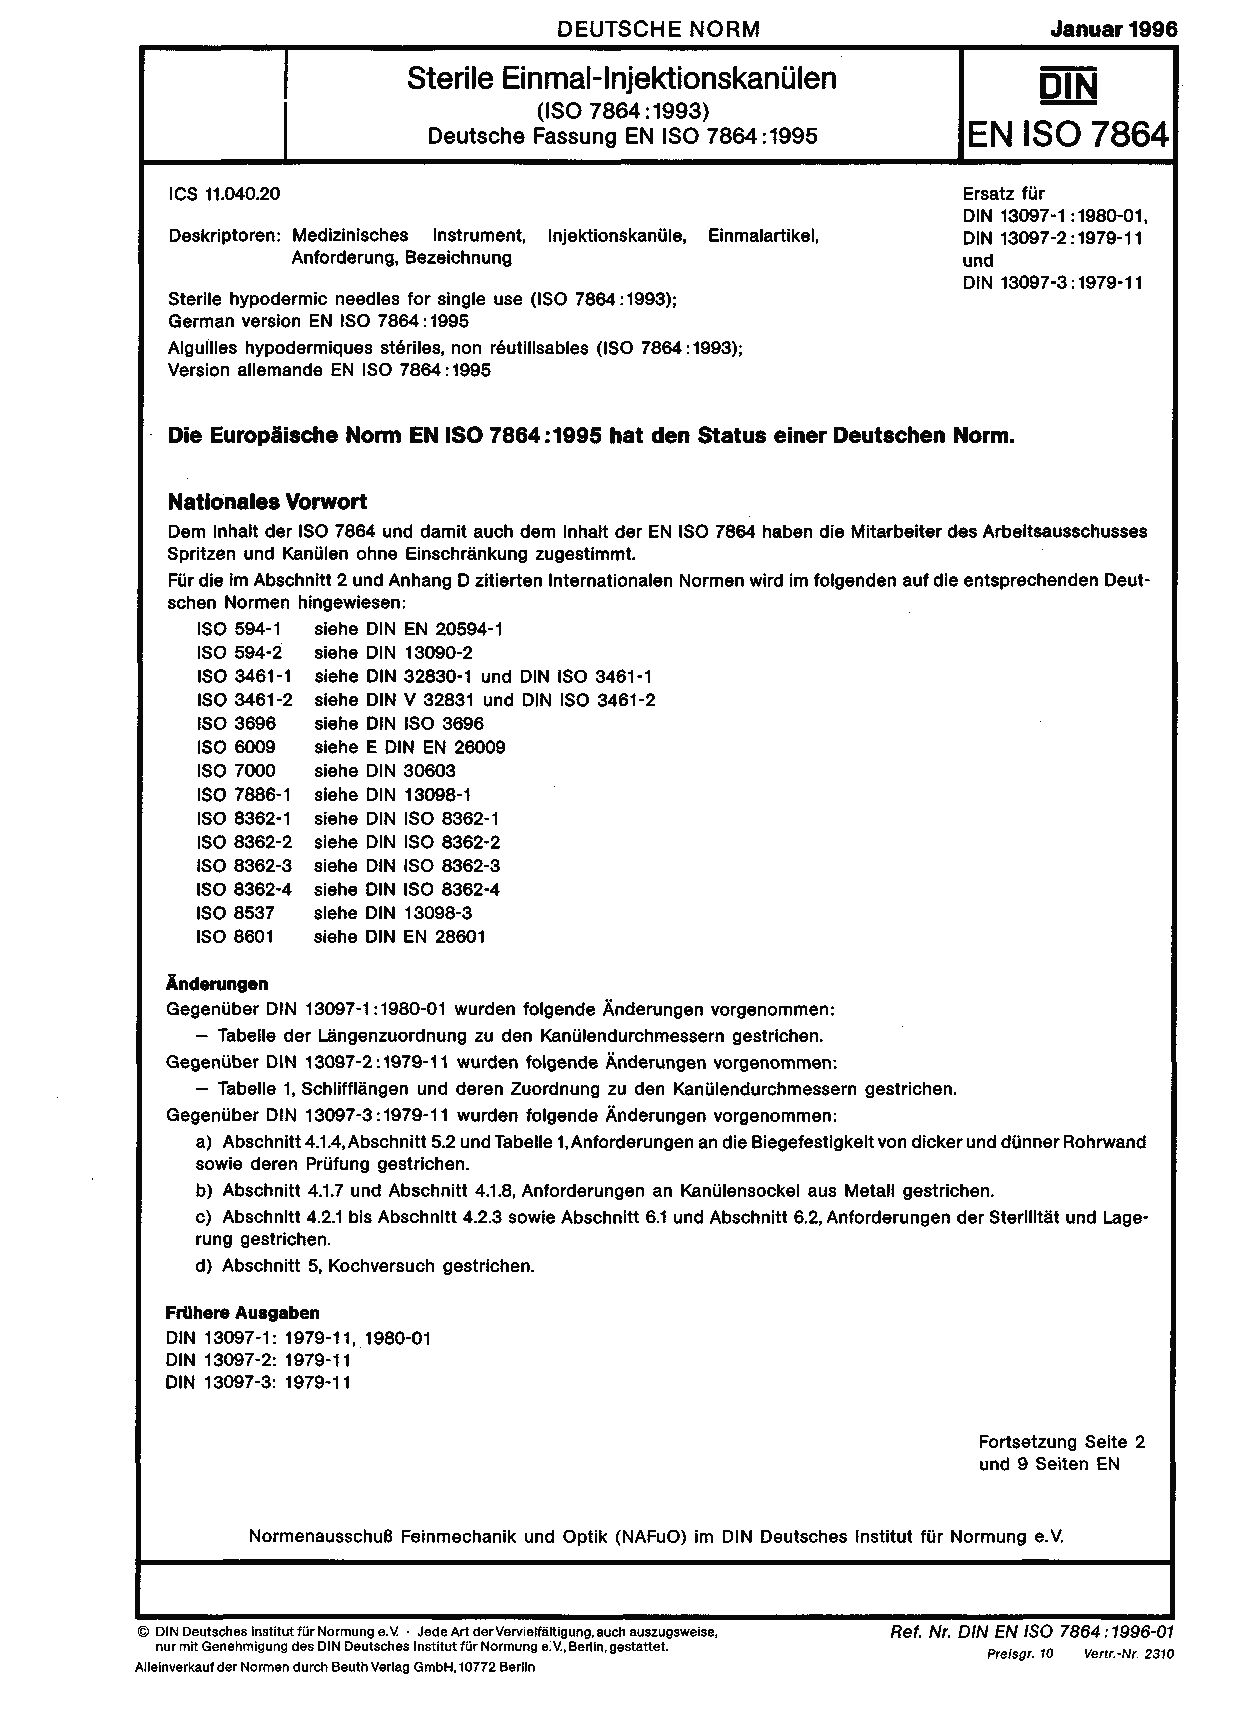 DIN EN ISO 7864:1996封面图